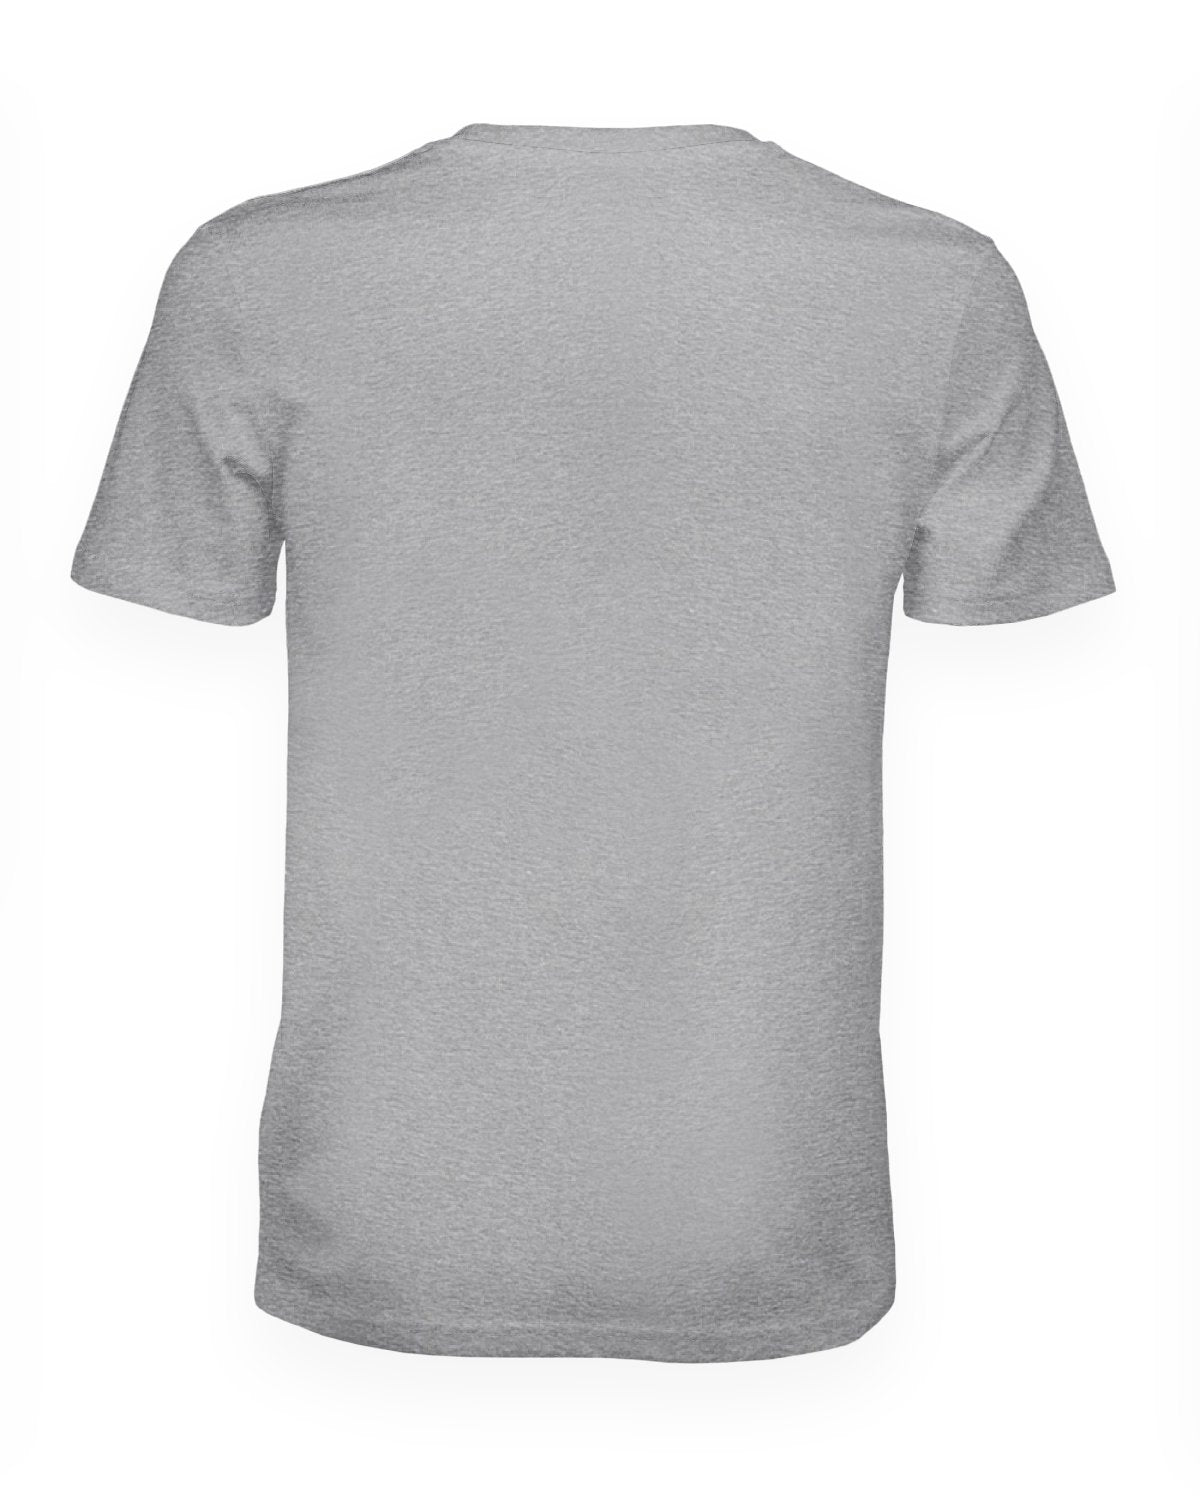 Tee-shirt gris chiné